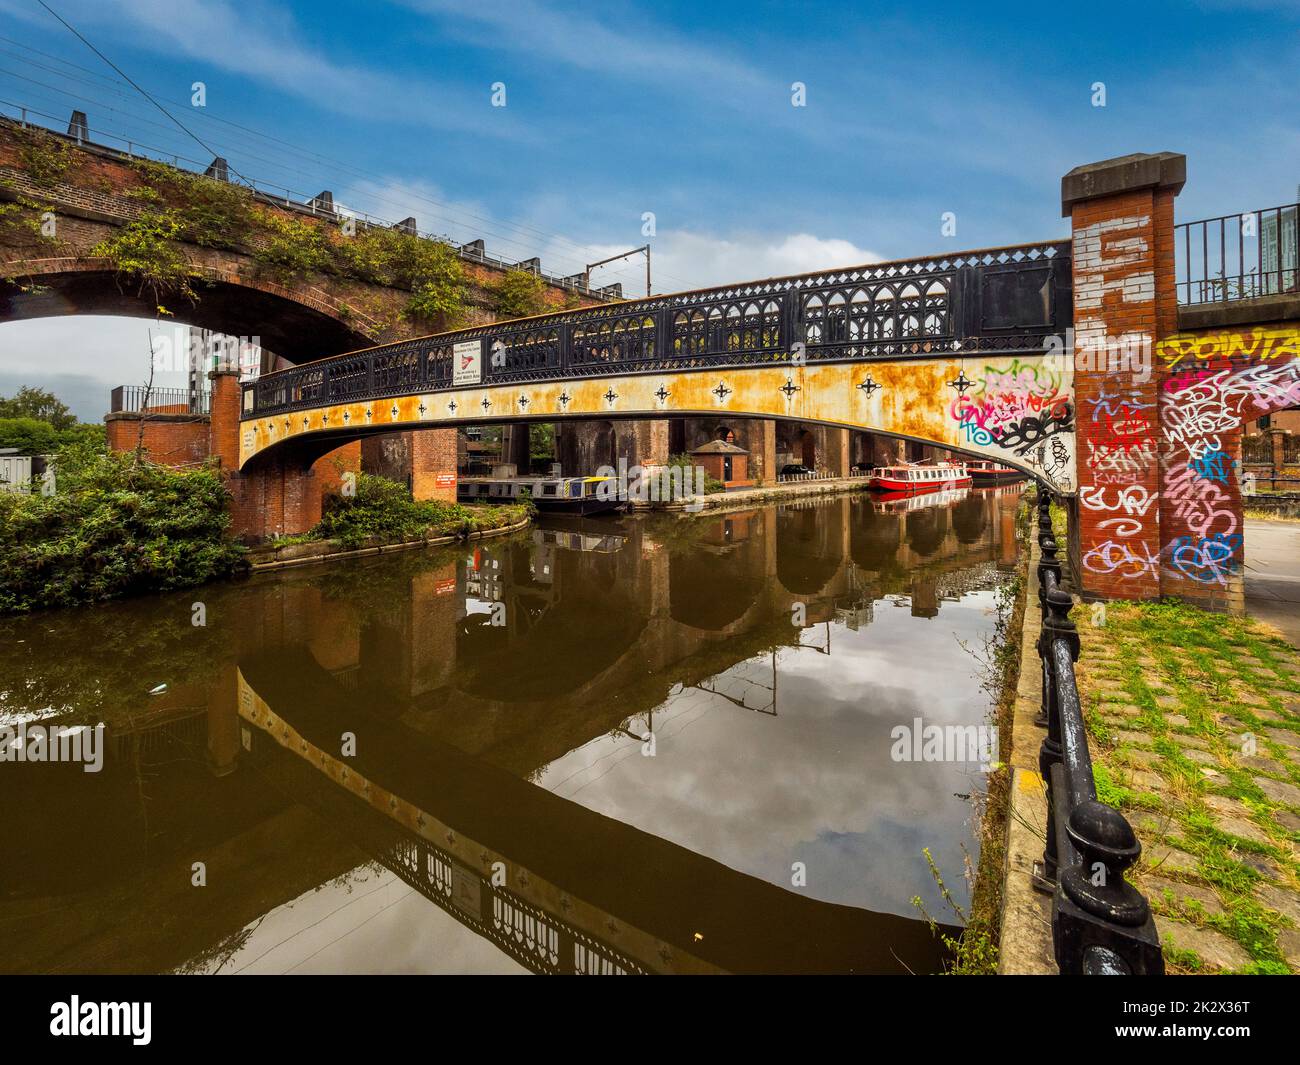 Passerelle, avec des graffitis aux couleurs vives qui enjambent le canal de Bridgewater, et qui se terminent sous le viaduc de Bridgewater. Manchester. ROYAUME-UNI. Banque D'Images